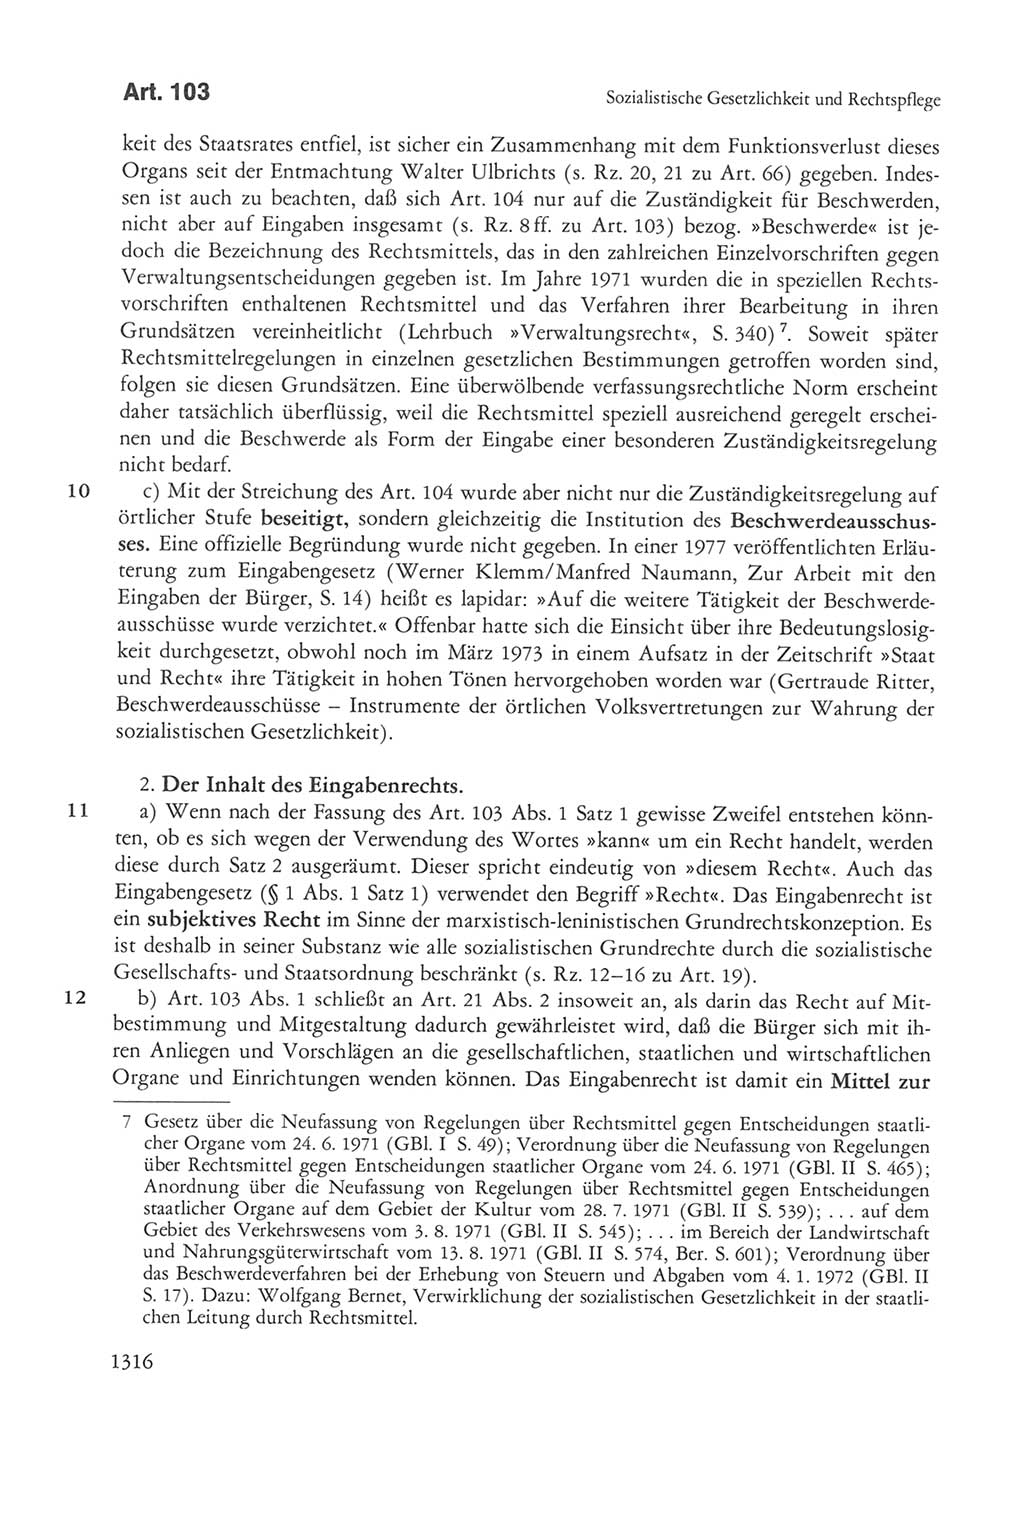 Die sozialistische Verfassung der Deutschen Demokratischen Republik (DDR), Kommentar mit einem Nachtrag 1997, Seite 1316 (Soz. Verf. DDR Komm. Nachtr. 1997, S. 1316)